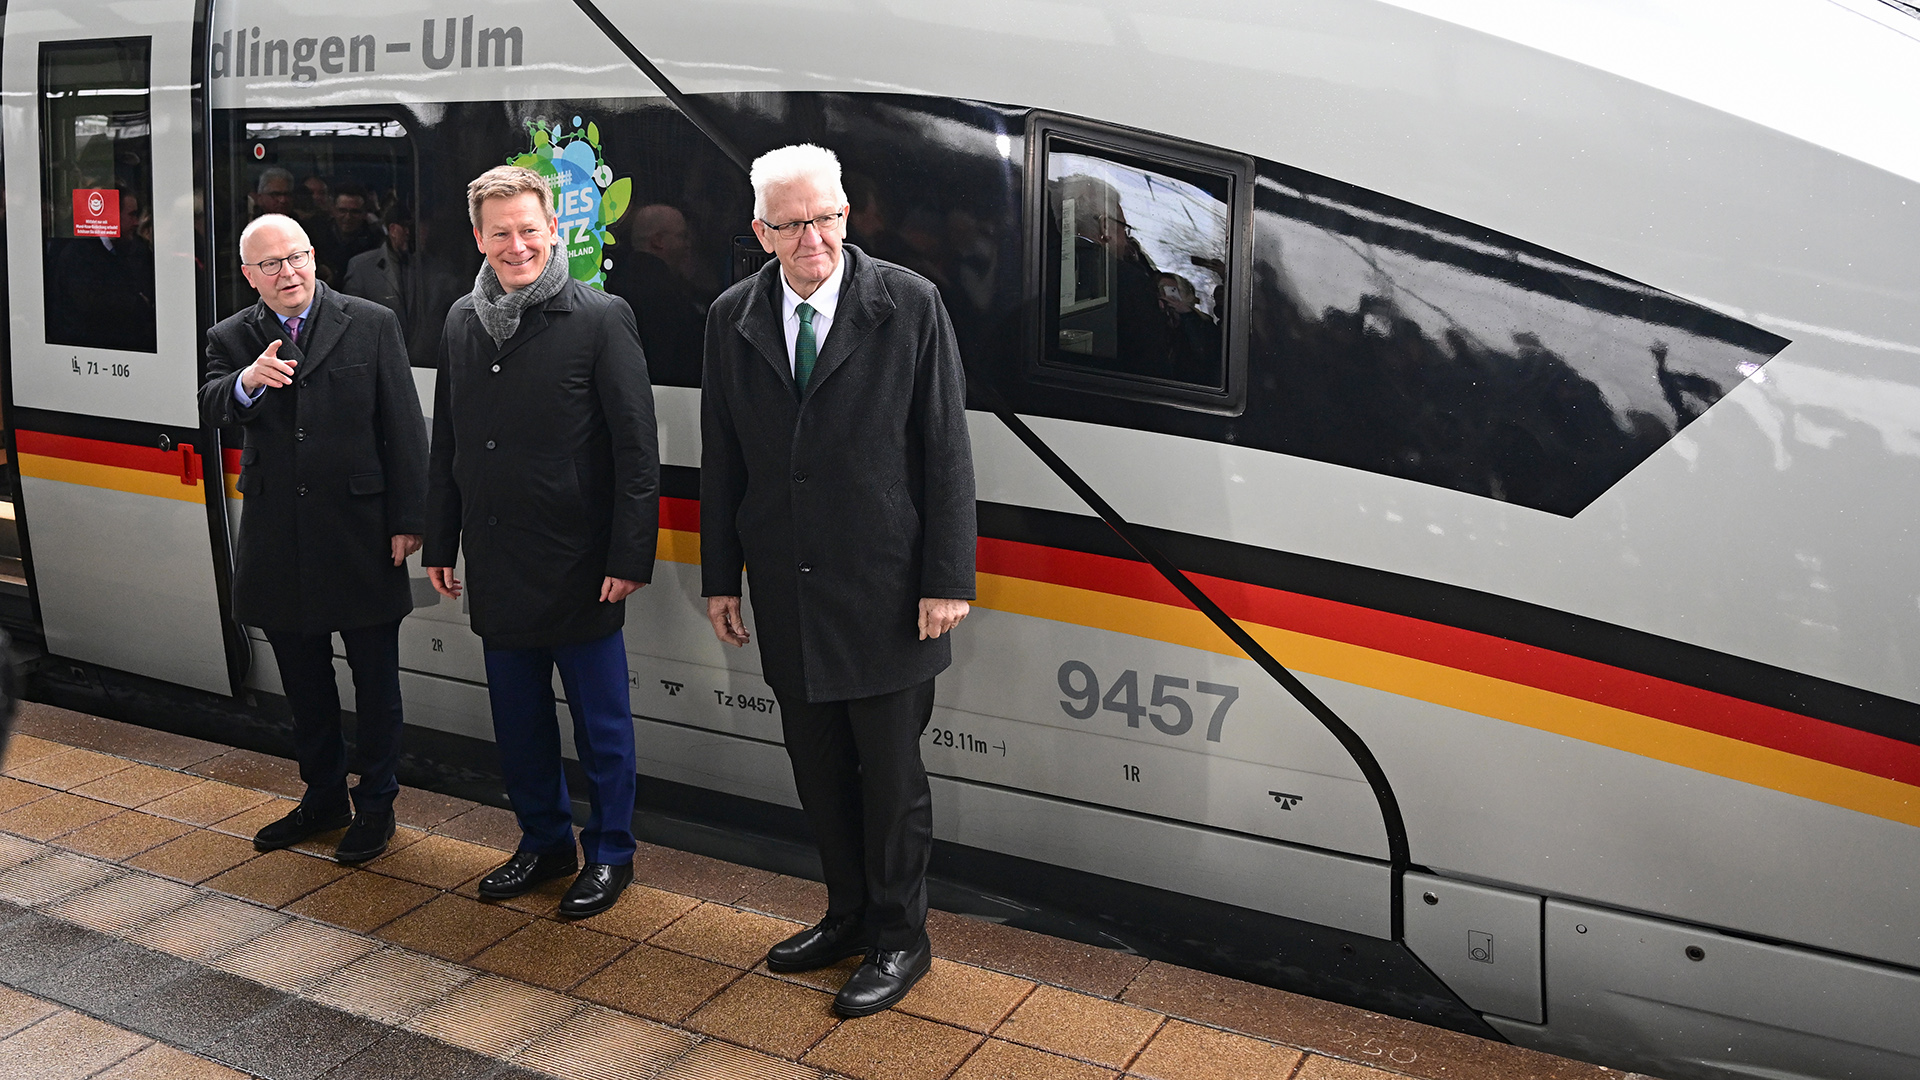 Michael Theurer, Richard Lutz und Winfried Kretschmann (von links) vor einem ICE am Ulmer Bahnhof. | dpa